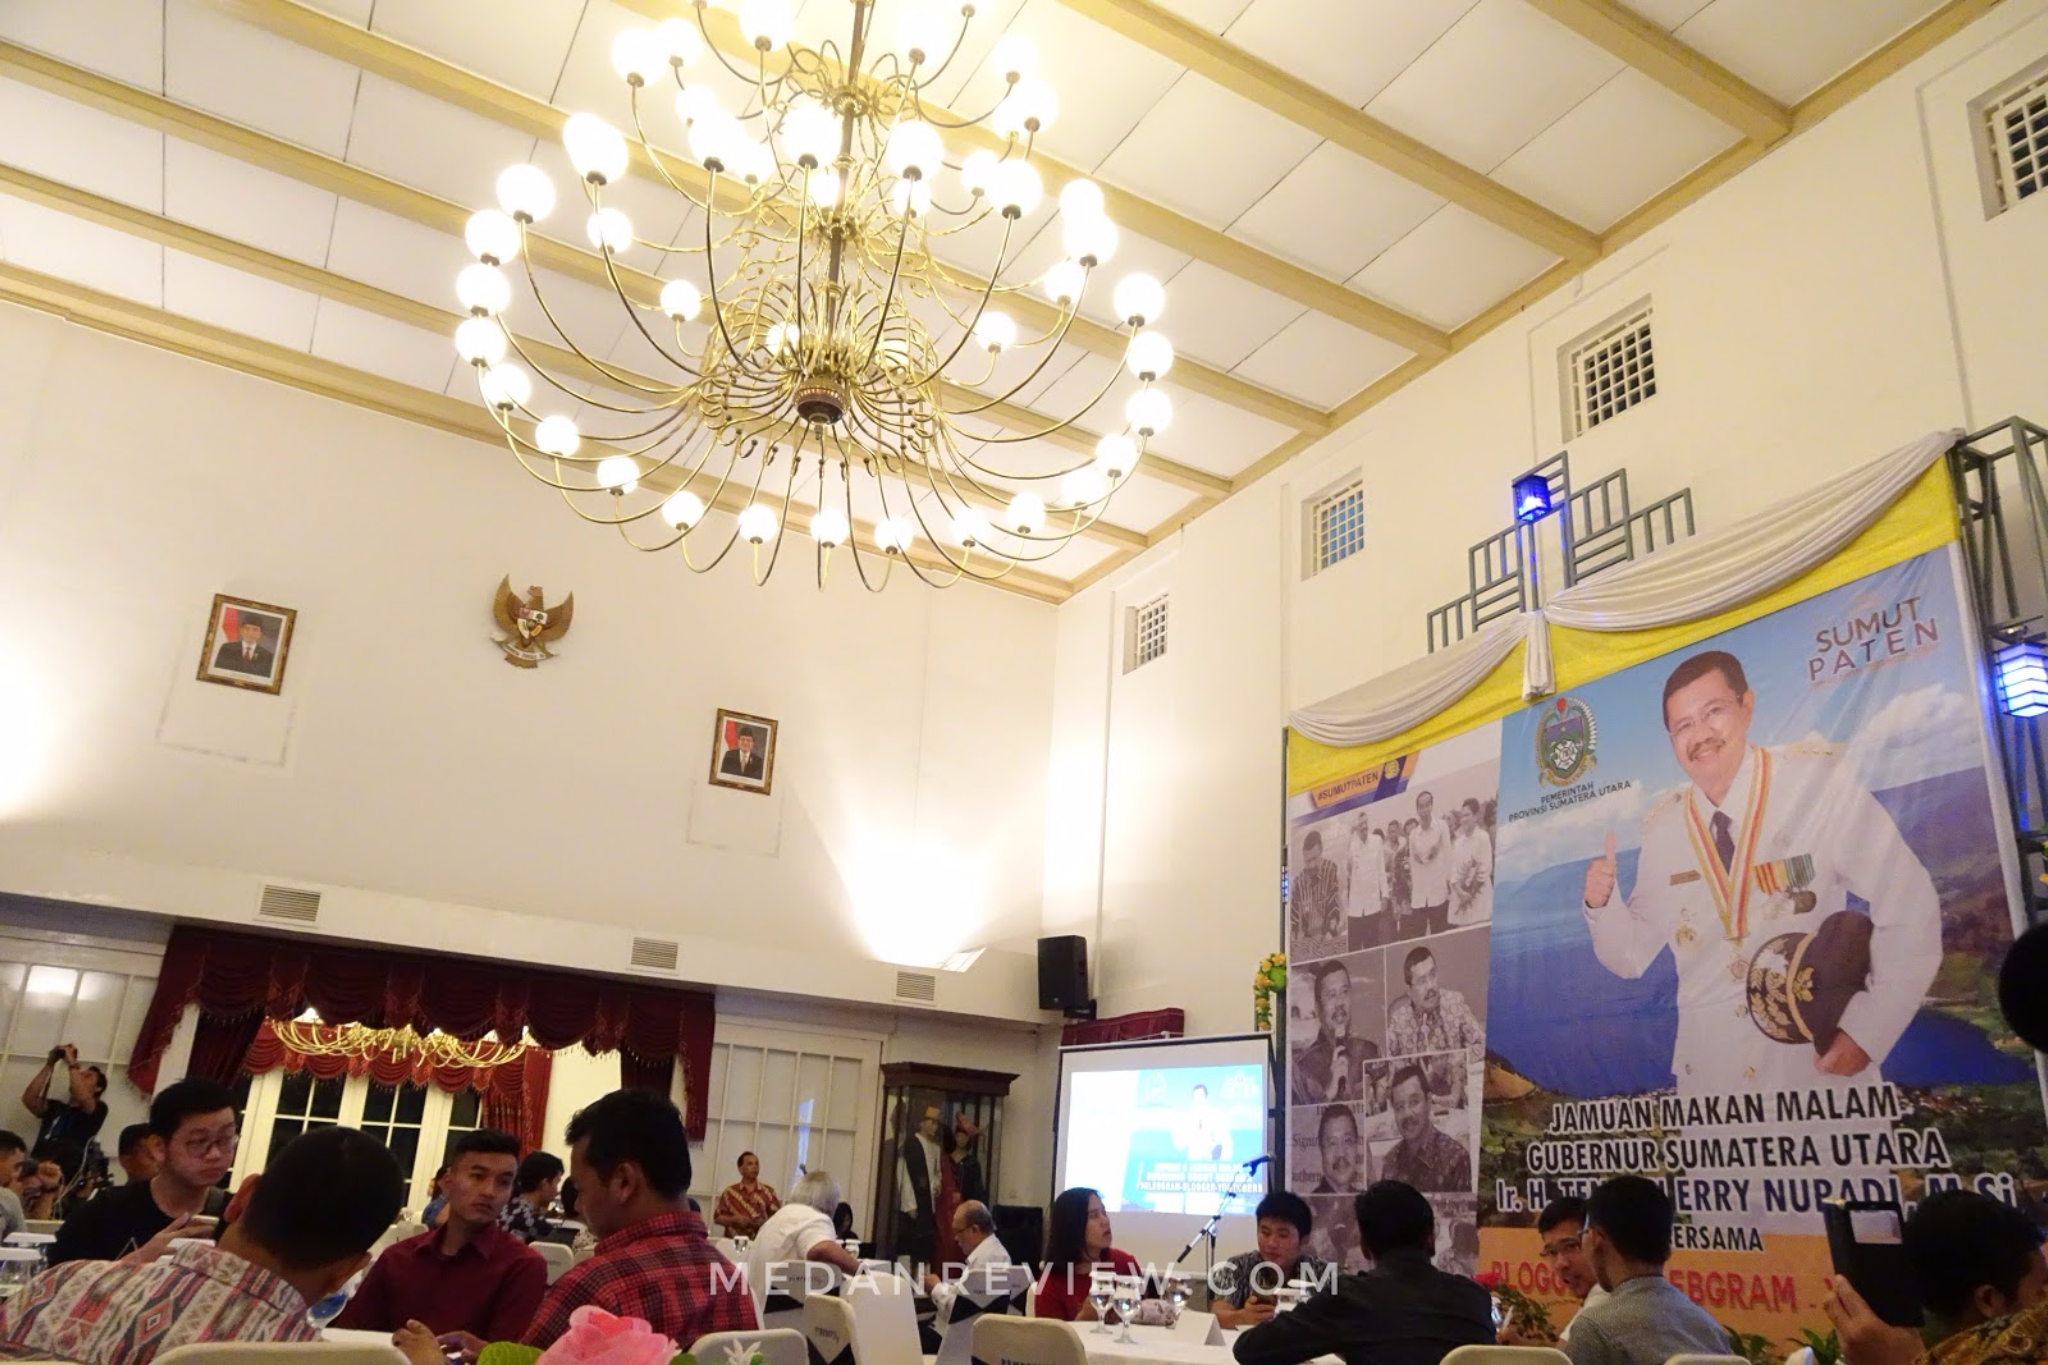 Ruang Utama Jamuan Makan Malam dan Kopdar Bersama Gubernur Sumatera Utara